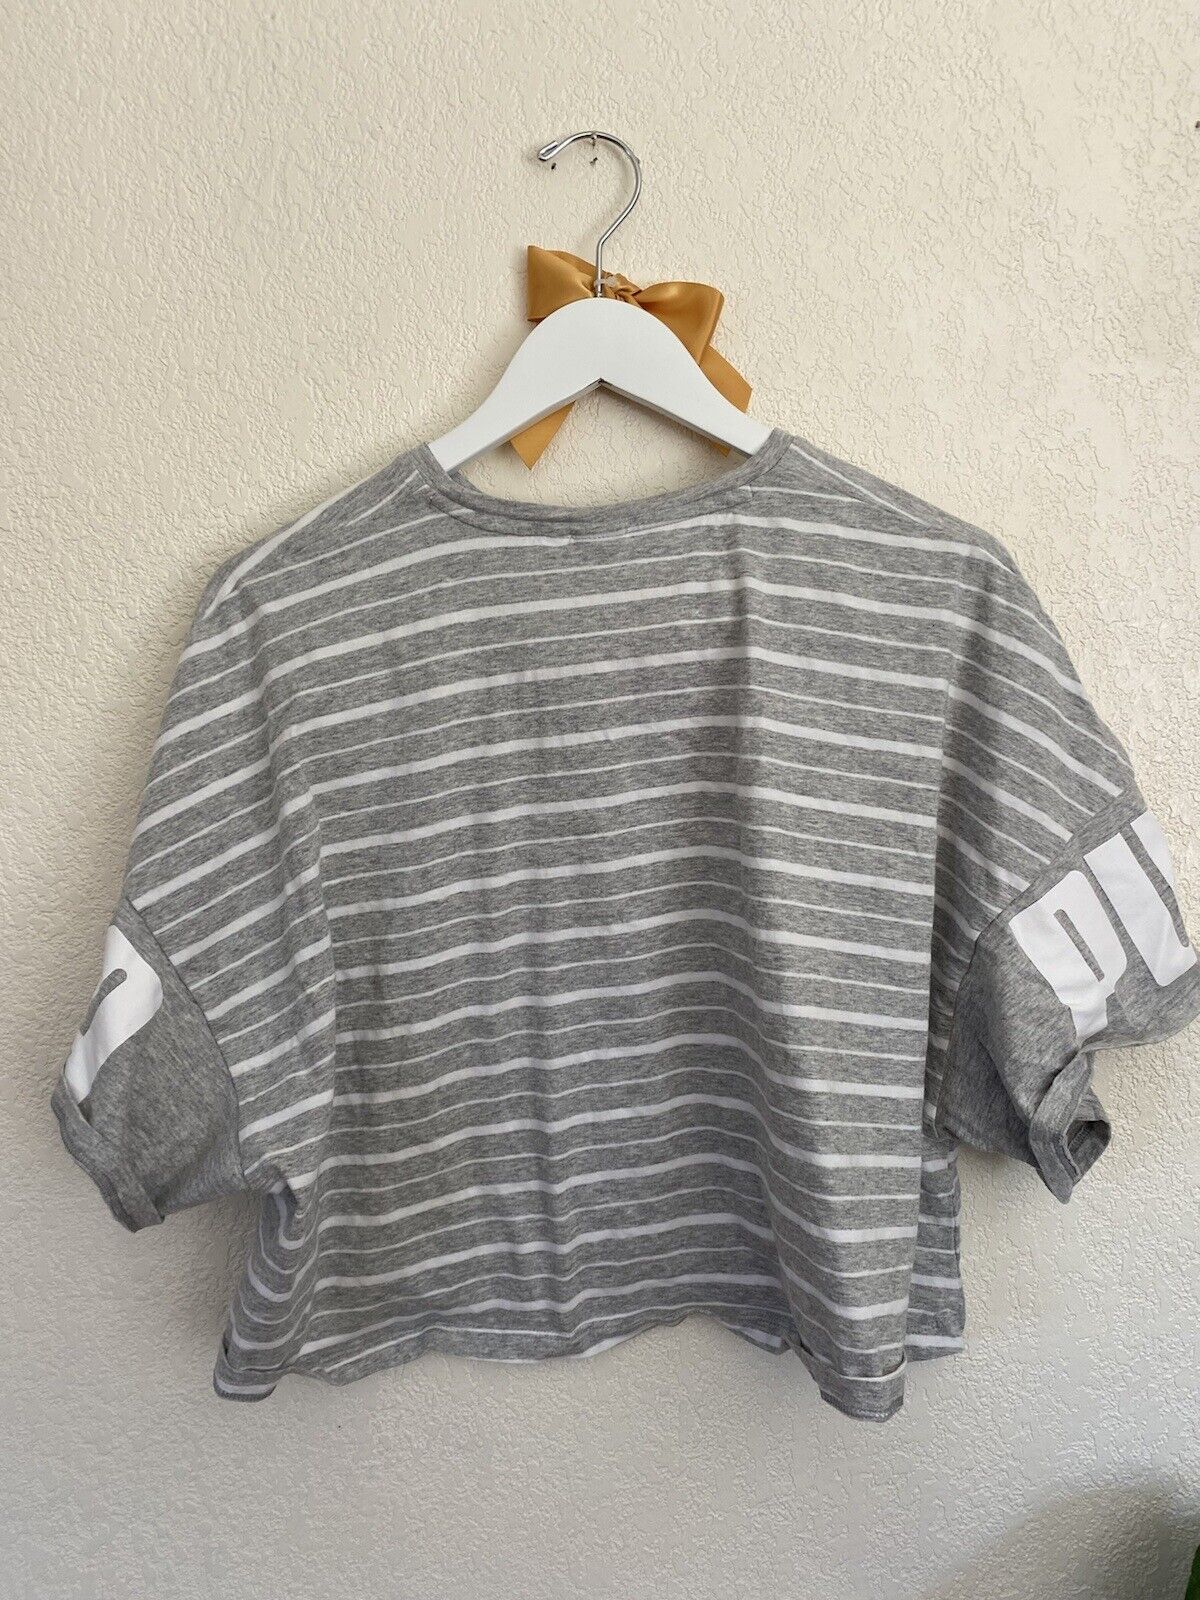 Gray Striped Tshirt - Puma - Women’s XL